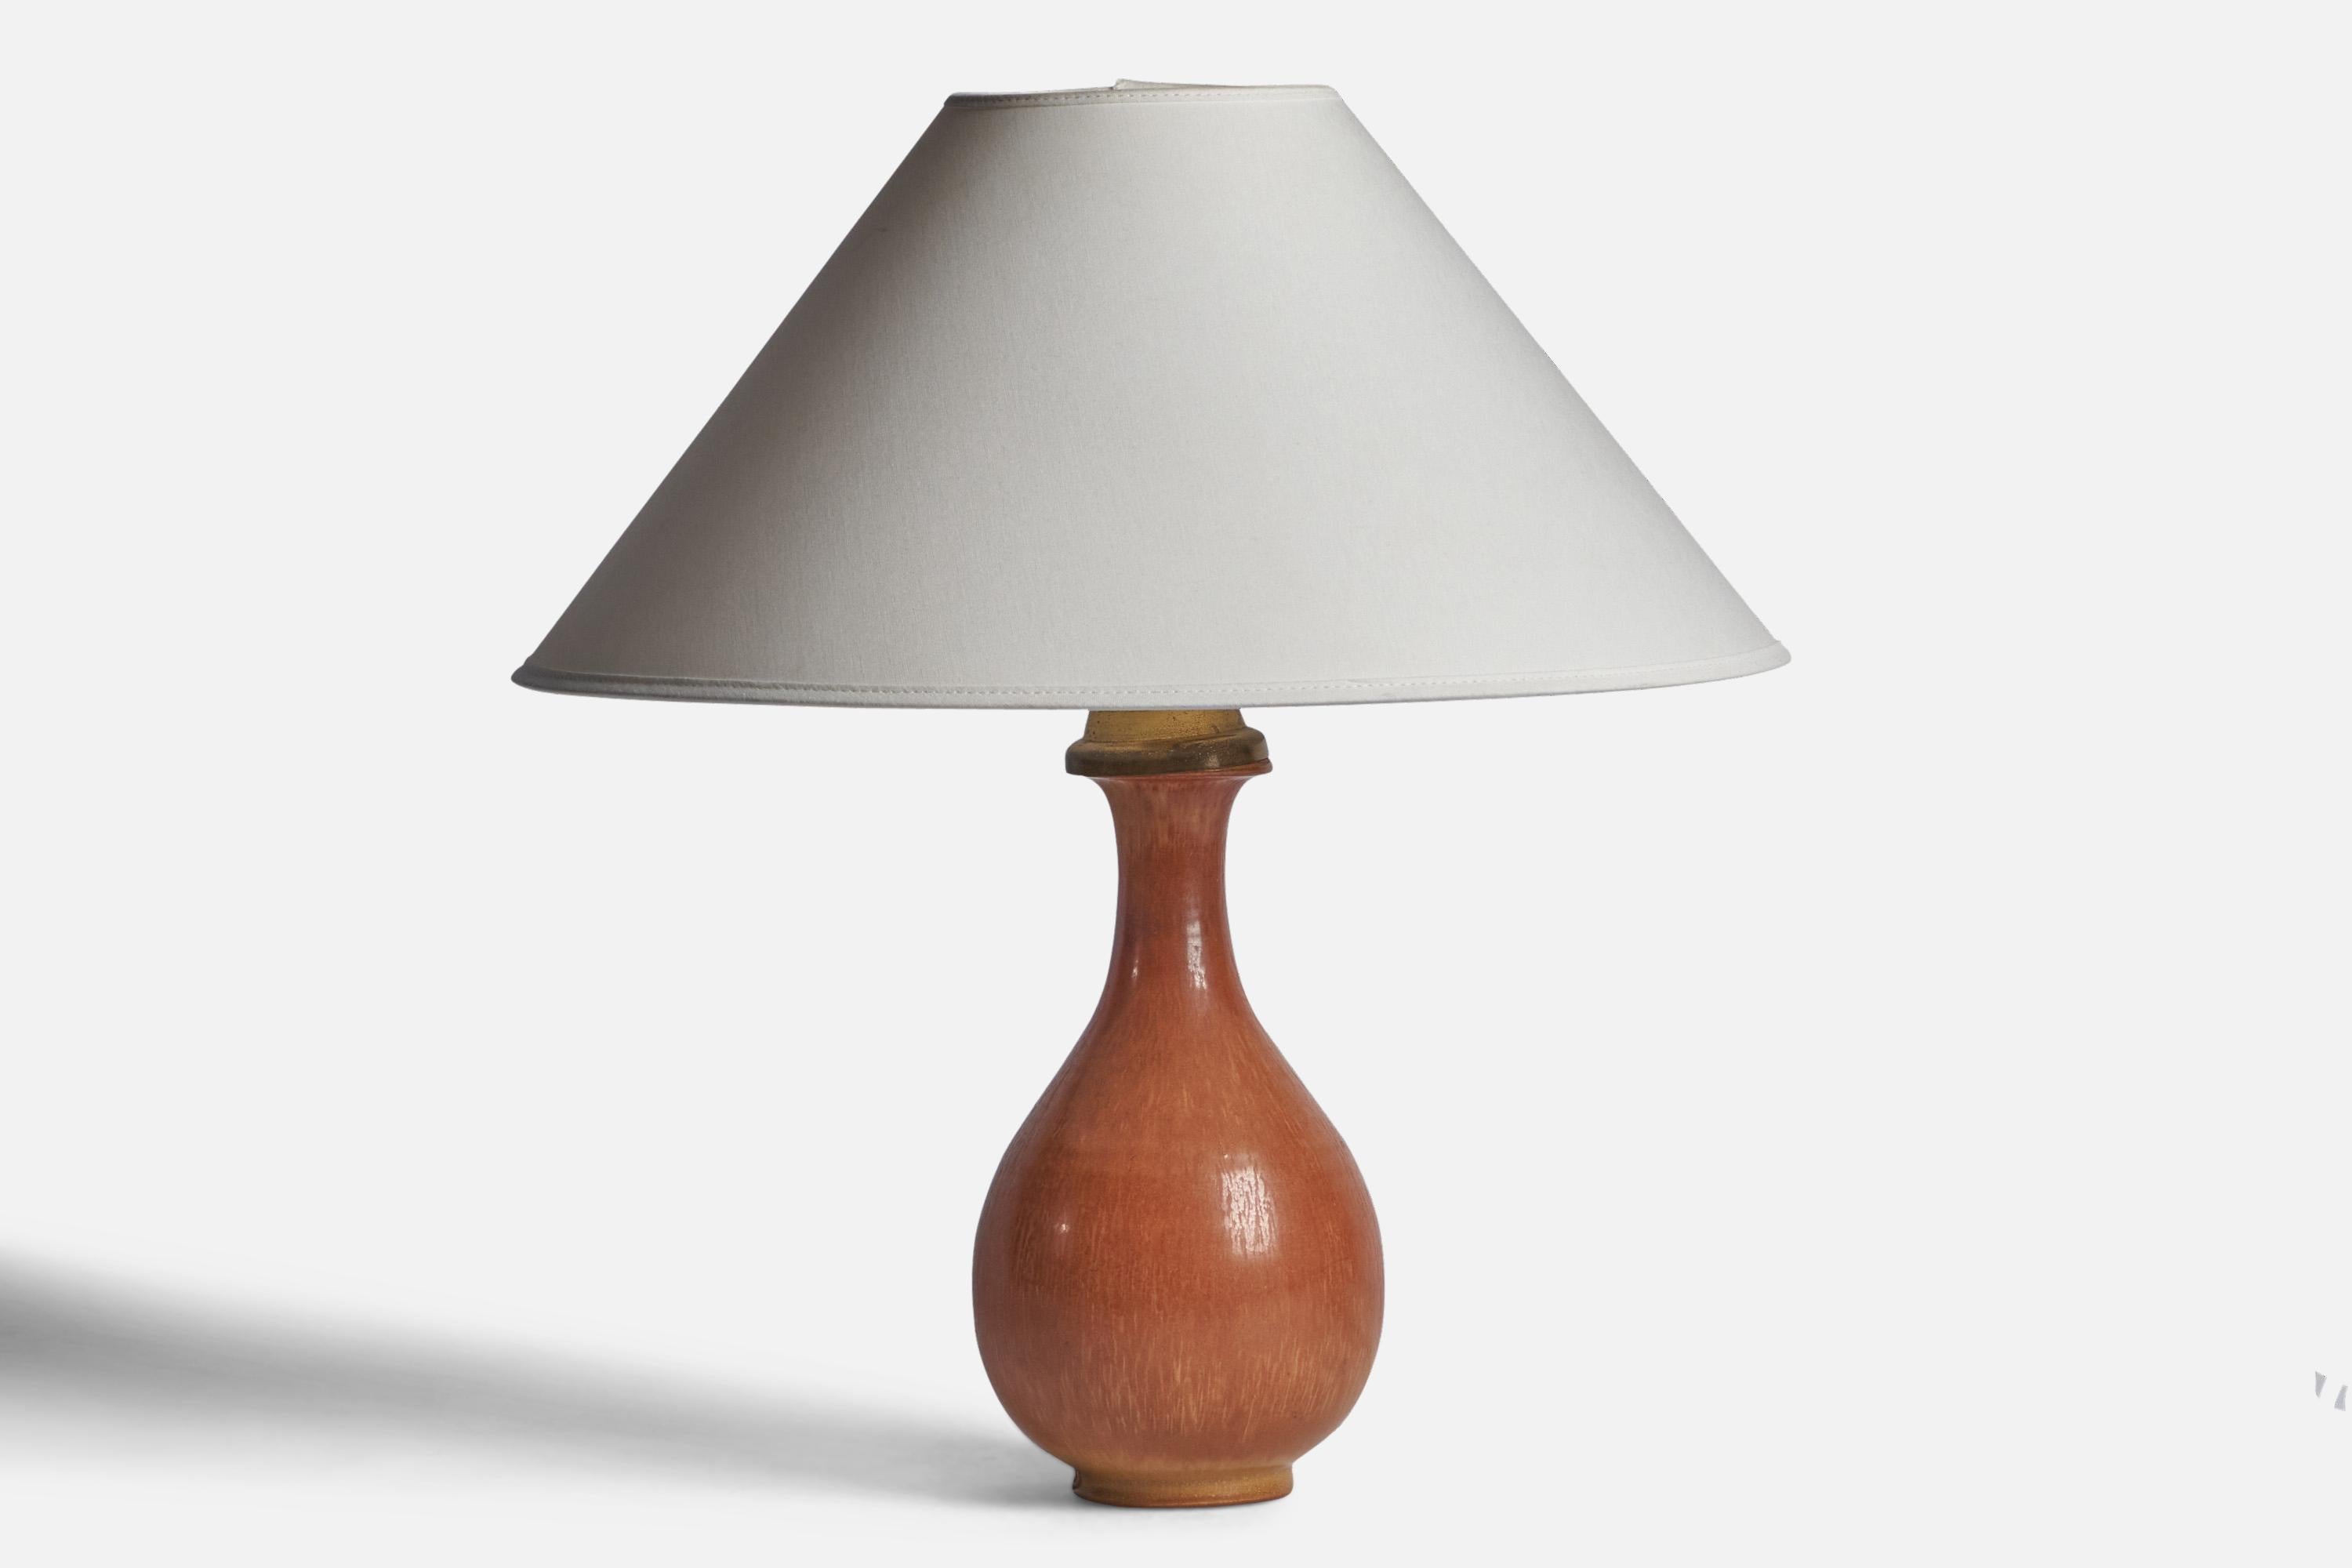 Lampe de table en grès émaillé brun, conçue par Gunnar Nylund et produite par Rörstrand, Suède, années 1940.

Dimensions de la lampe (pouces) : 13.25